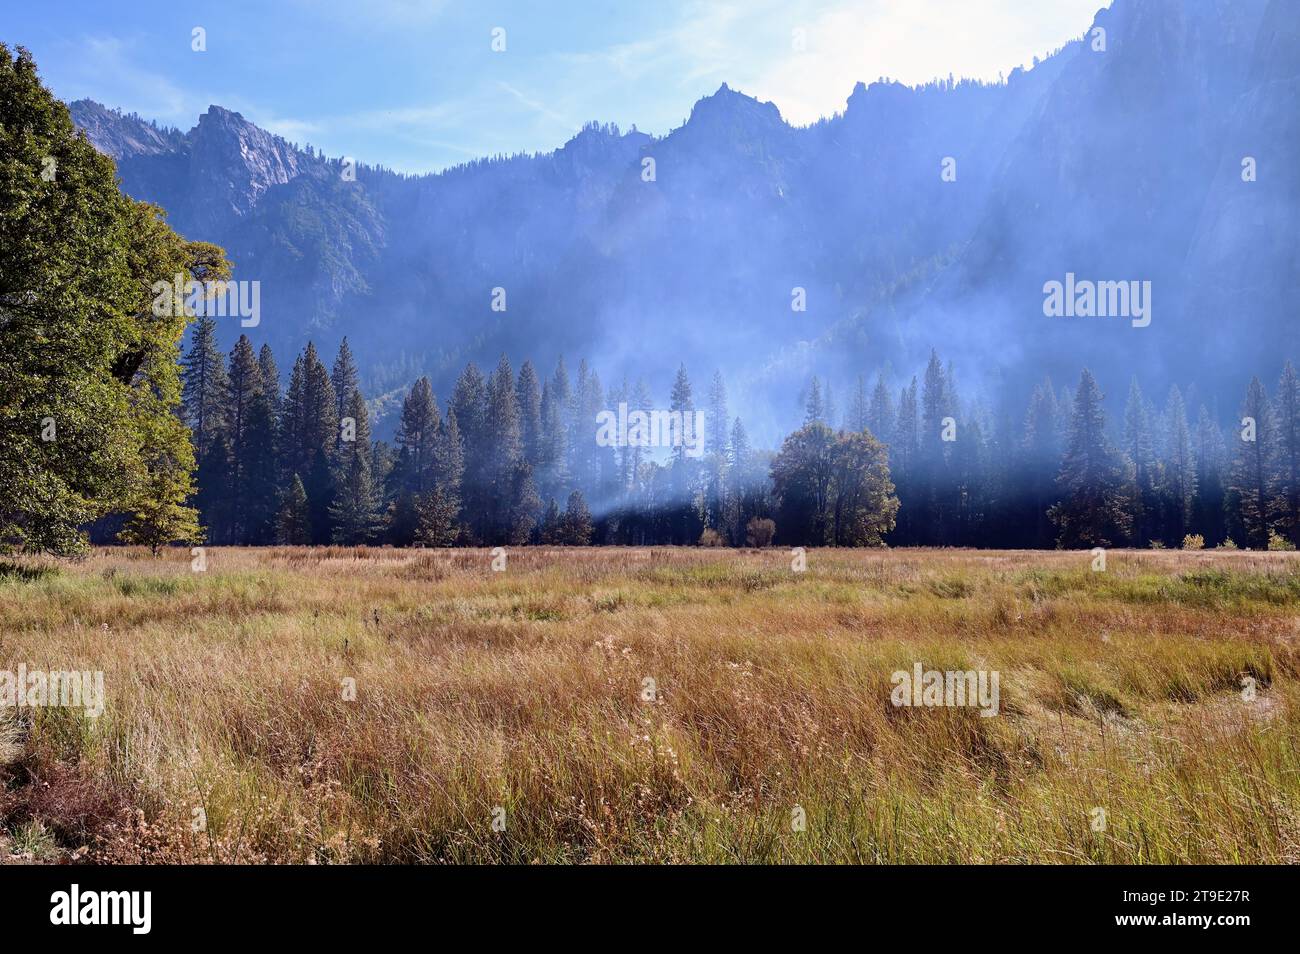 Parc national de Yosemite, Californie, États-Unis. La fumée s'accroche à la vallée de Yosemite entourée par les escarpements de roche granitique pure. Banque D'Images